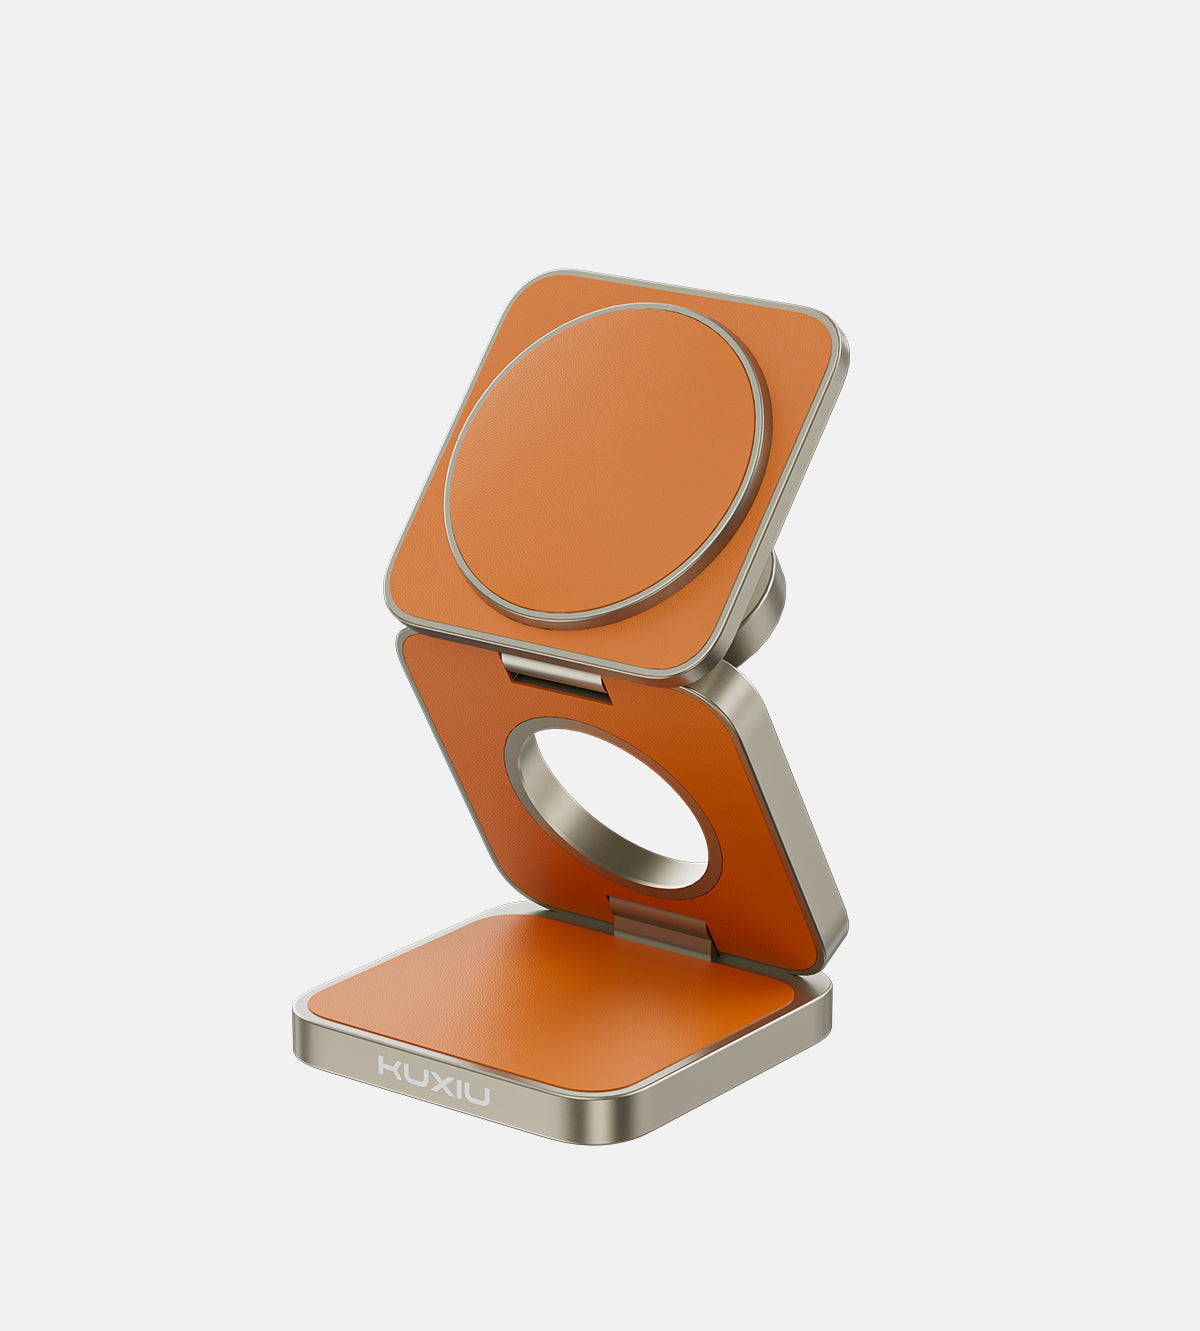 KUXIU X40 Pro 3-in-1 faltbares magnetisches kabelloses Ladegerät und Ständer-Set – orangefarbenes Leder